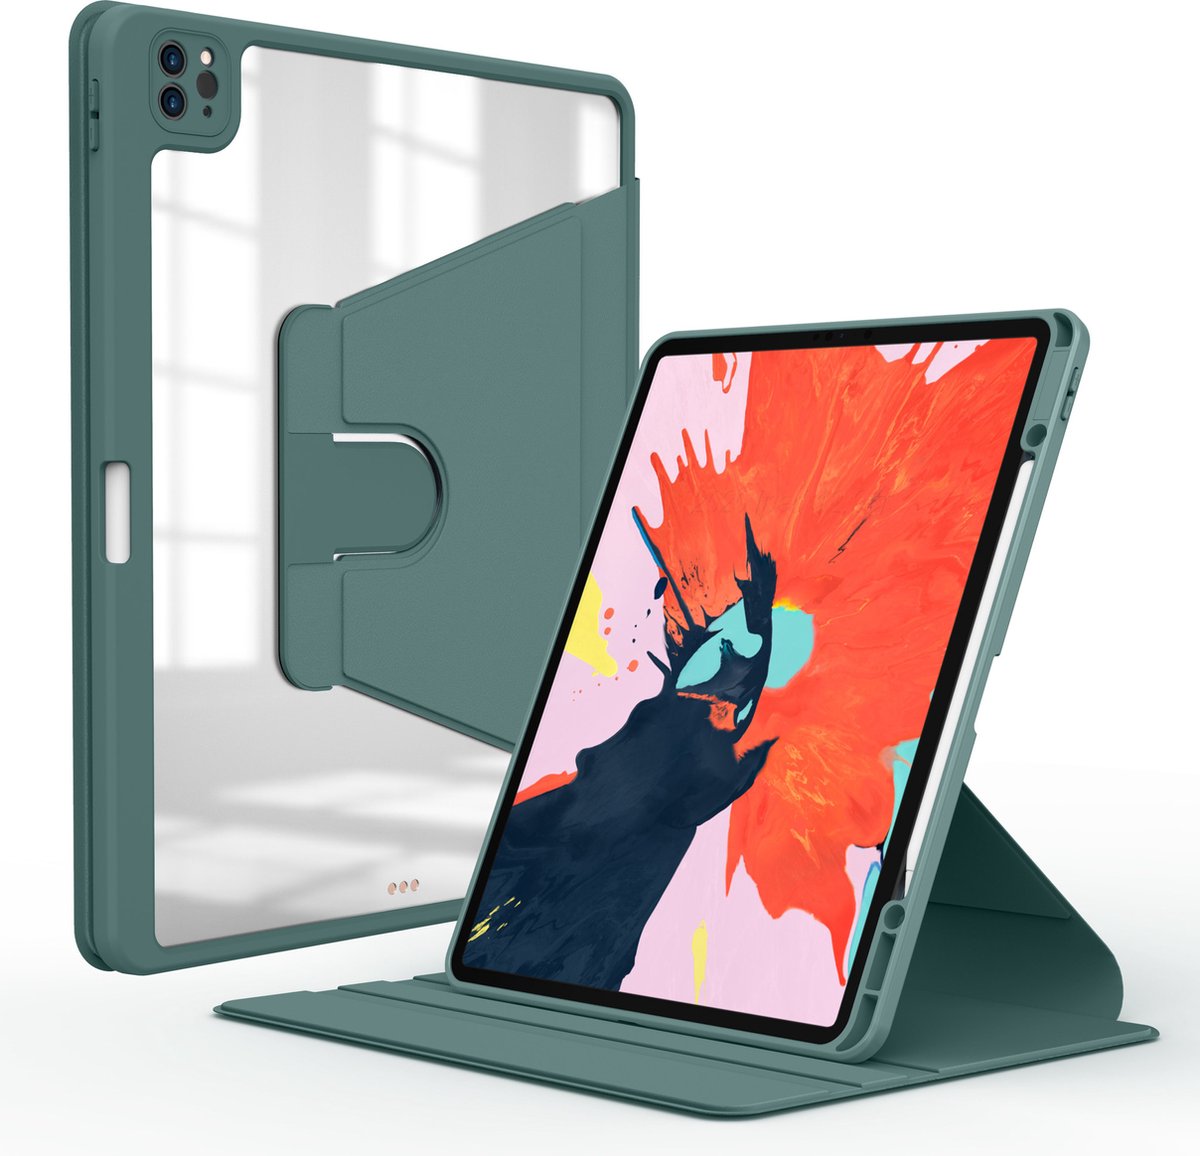 Wiwu - Tablet hoes geschikt voor Apple iPad 2019 - 10.2 inch - iPad hoes met Stand Functie - iPad 2019 hoes met Auto Wake/Sleep functie - Groen